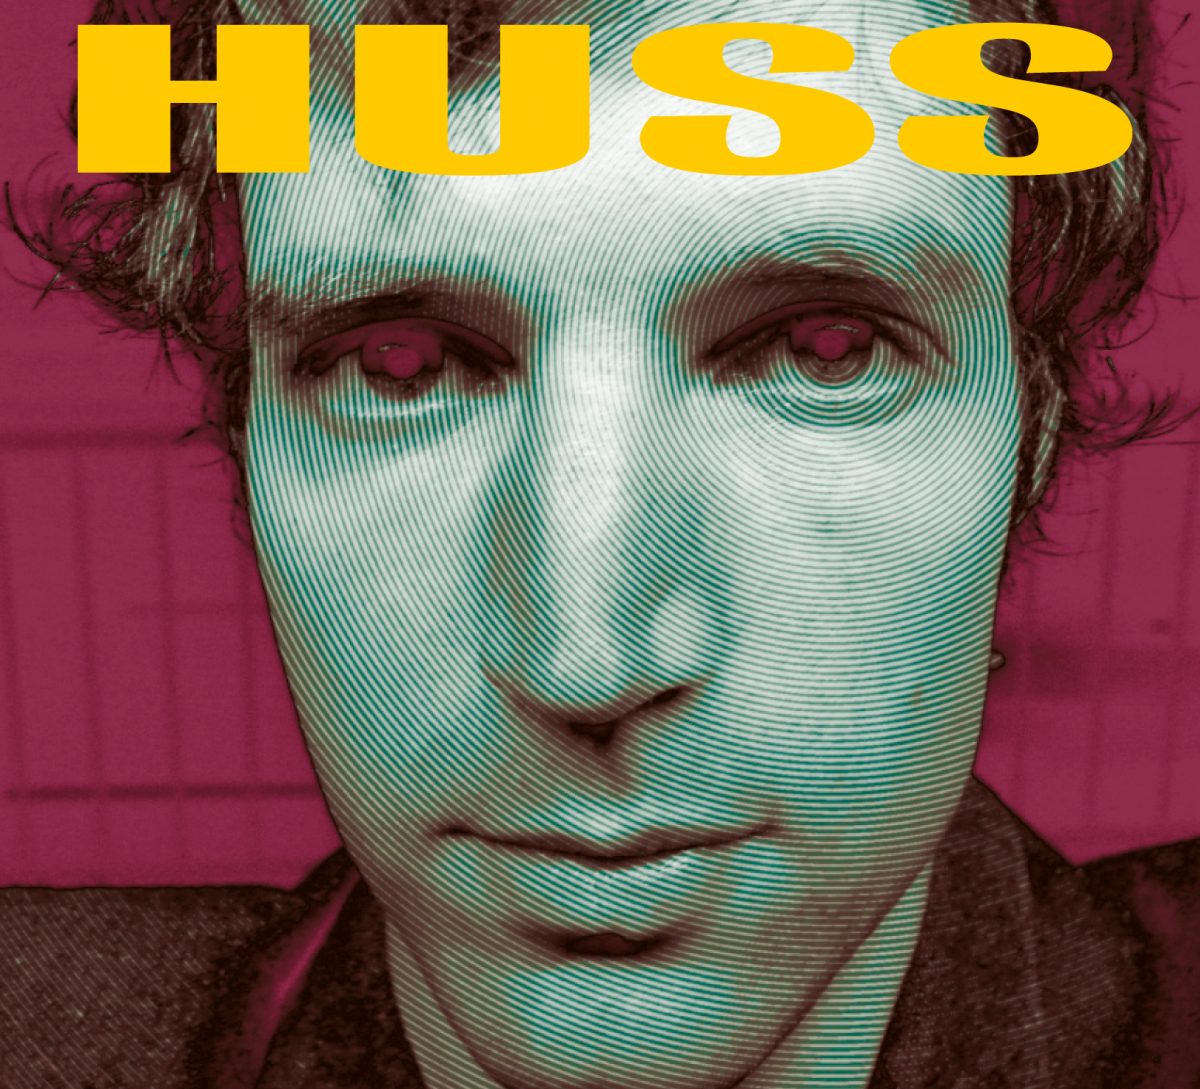 Huss - Huss 1